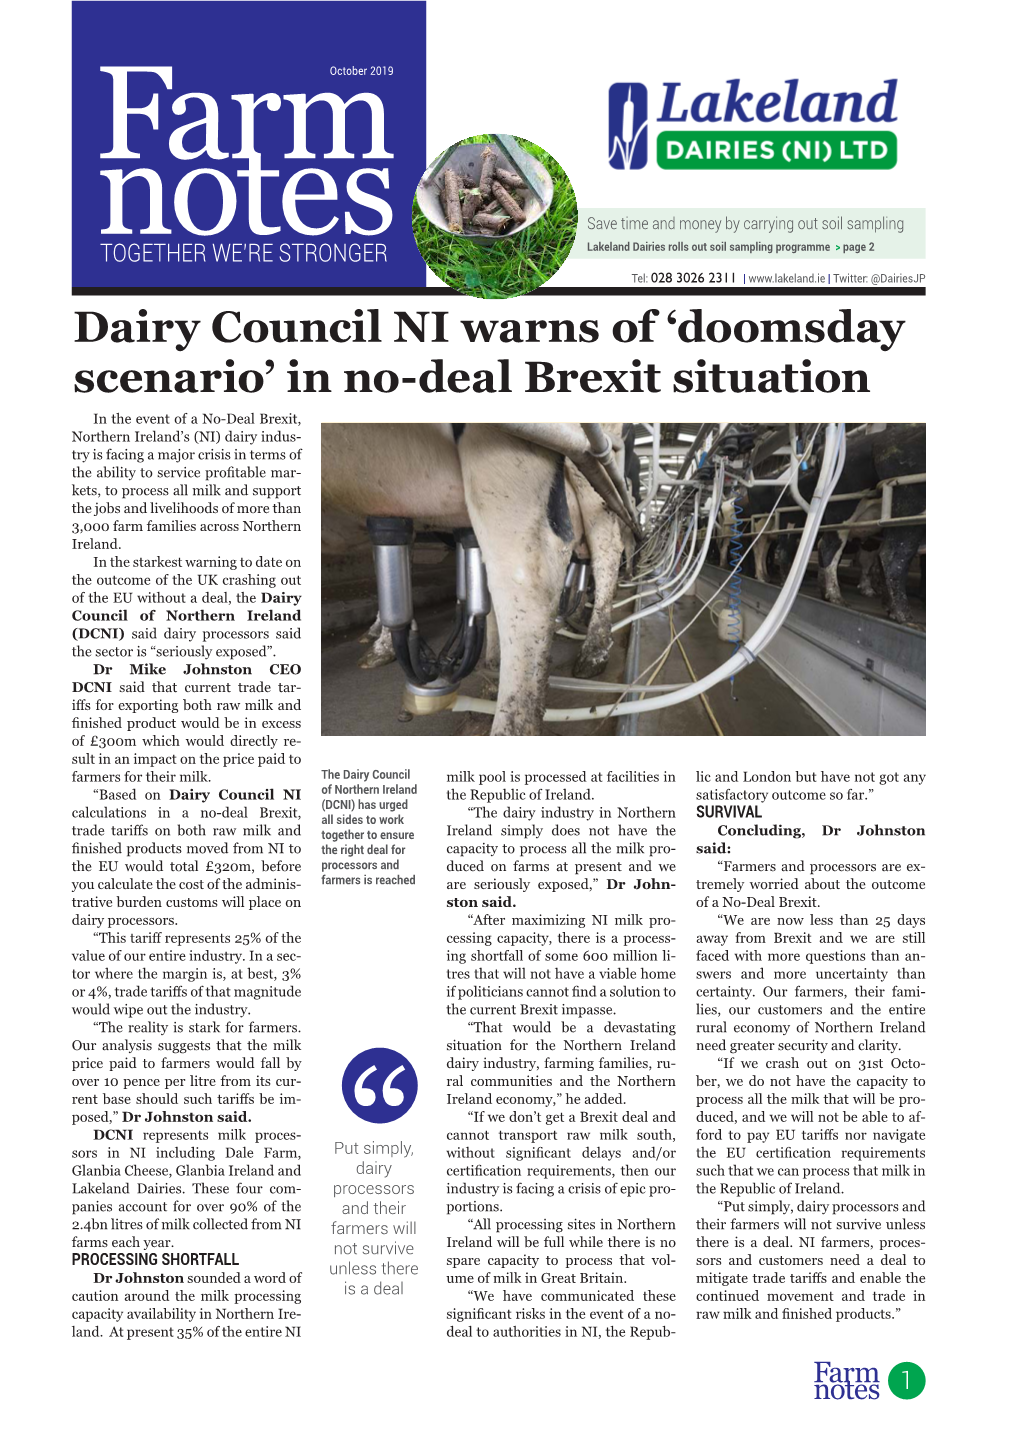 Dairy Council NI Warns of 'Doomsday Scenario' in No